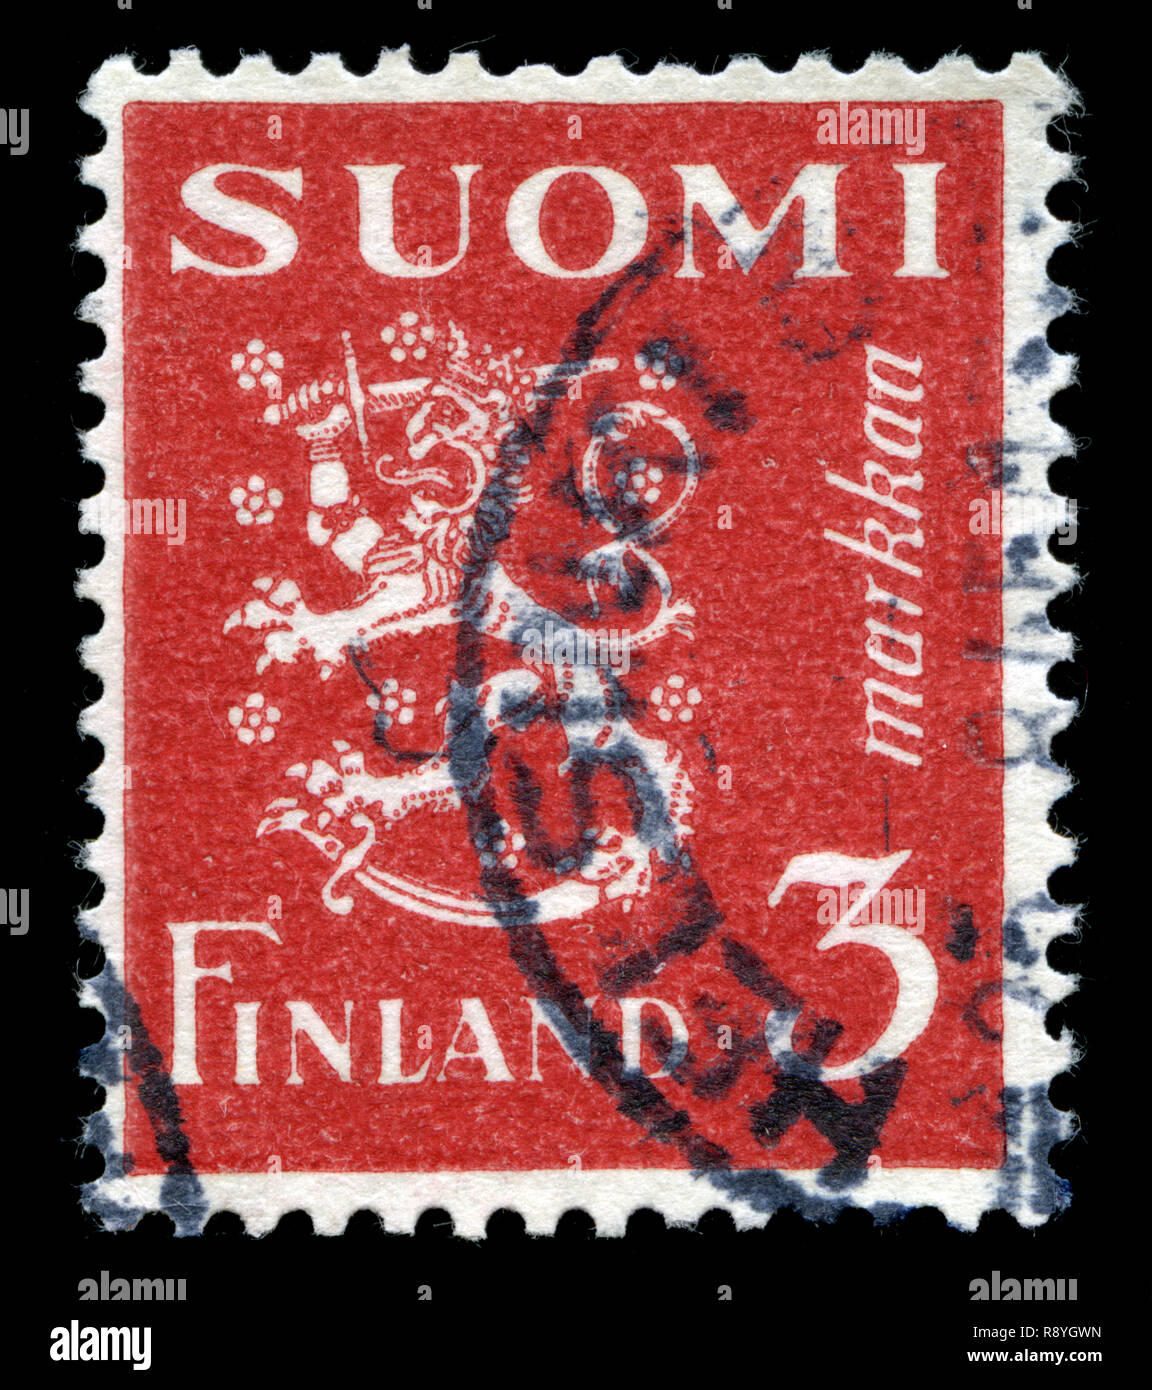 Timbre-poste de la Finlande dans le modèle 1930 Lion série émise en 1945 Banque D'Images